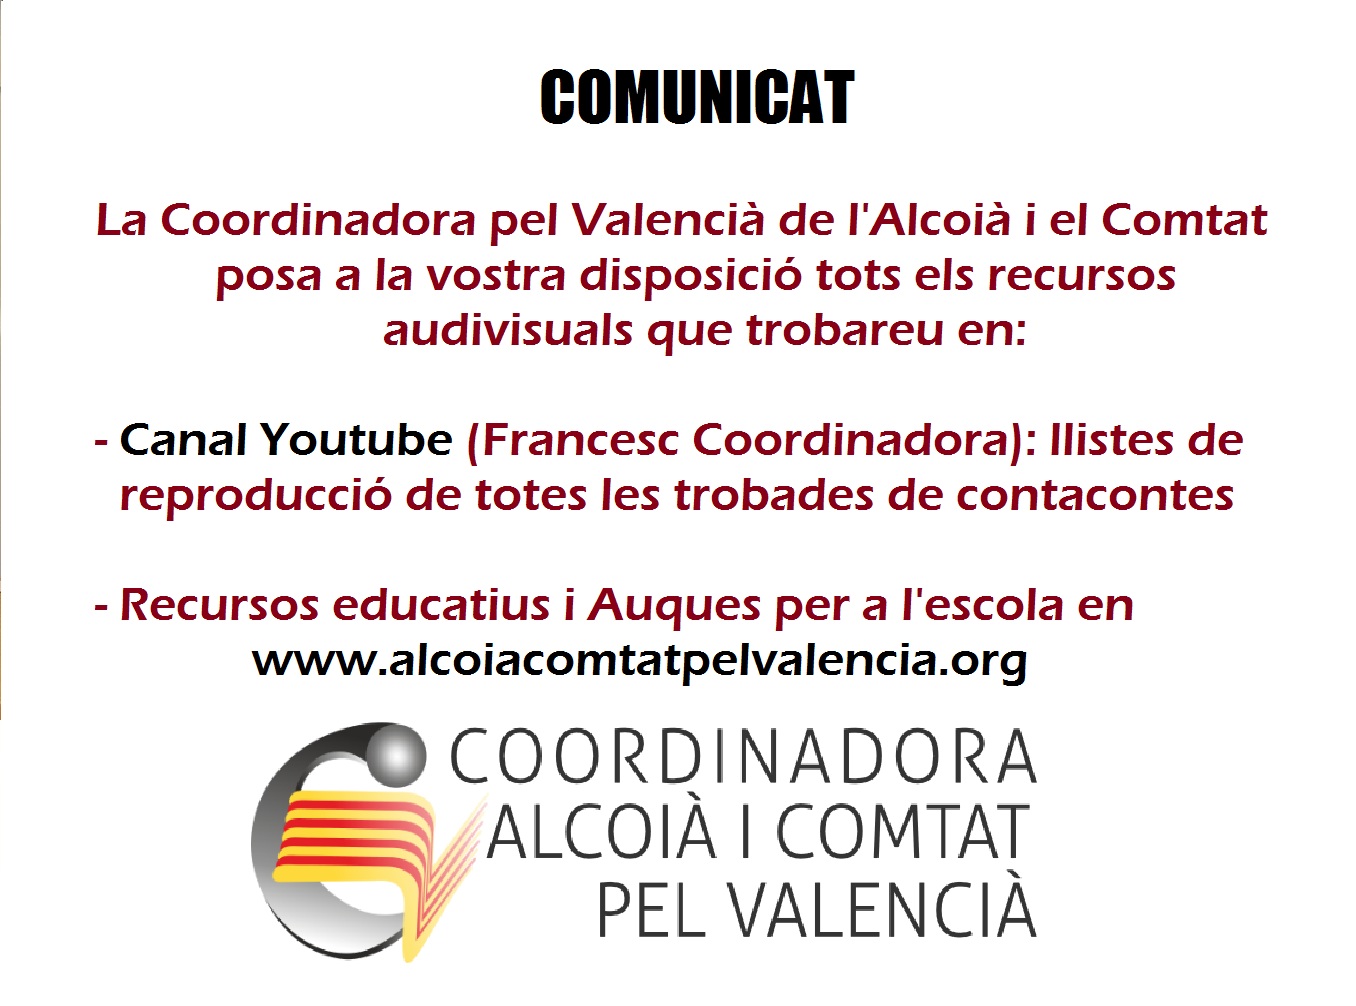 Comunicat i recursos educatius en línia de la Coordinadora pel Valencià